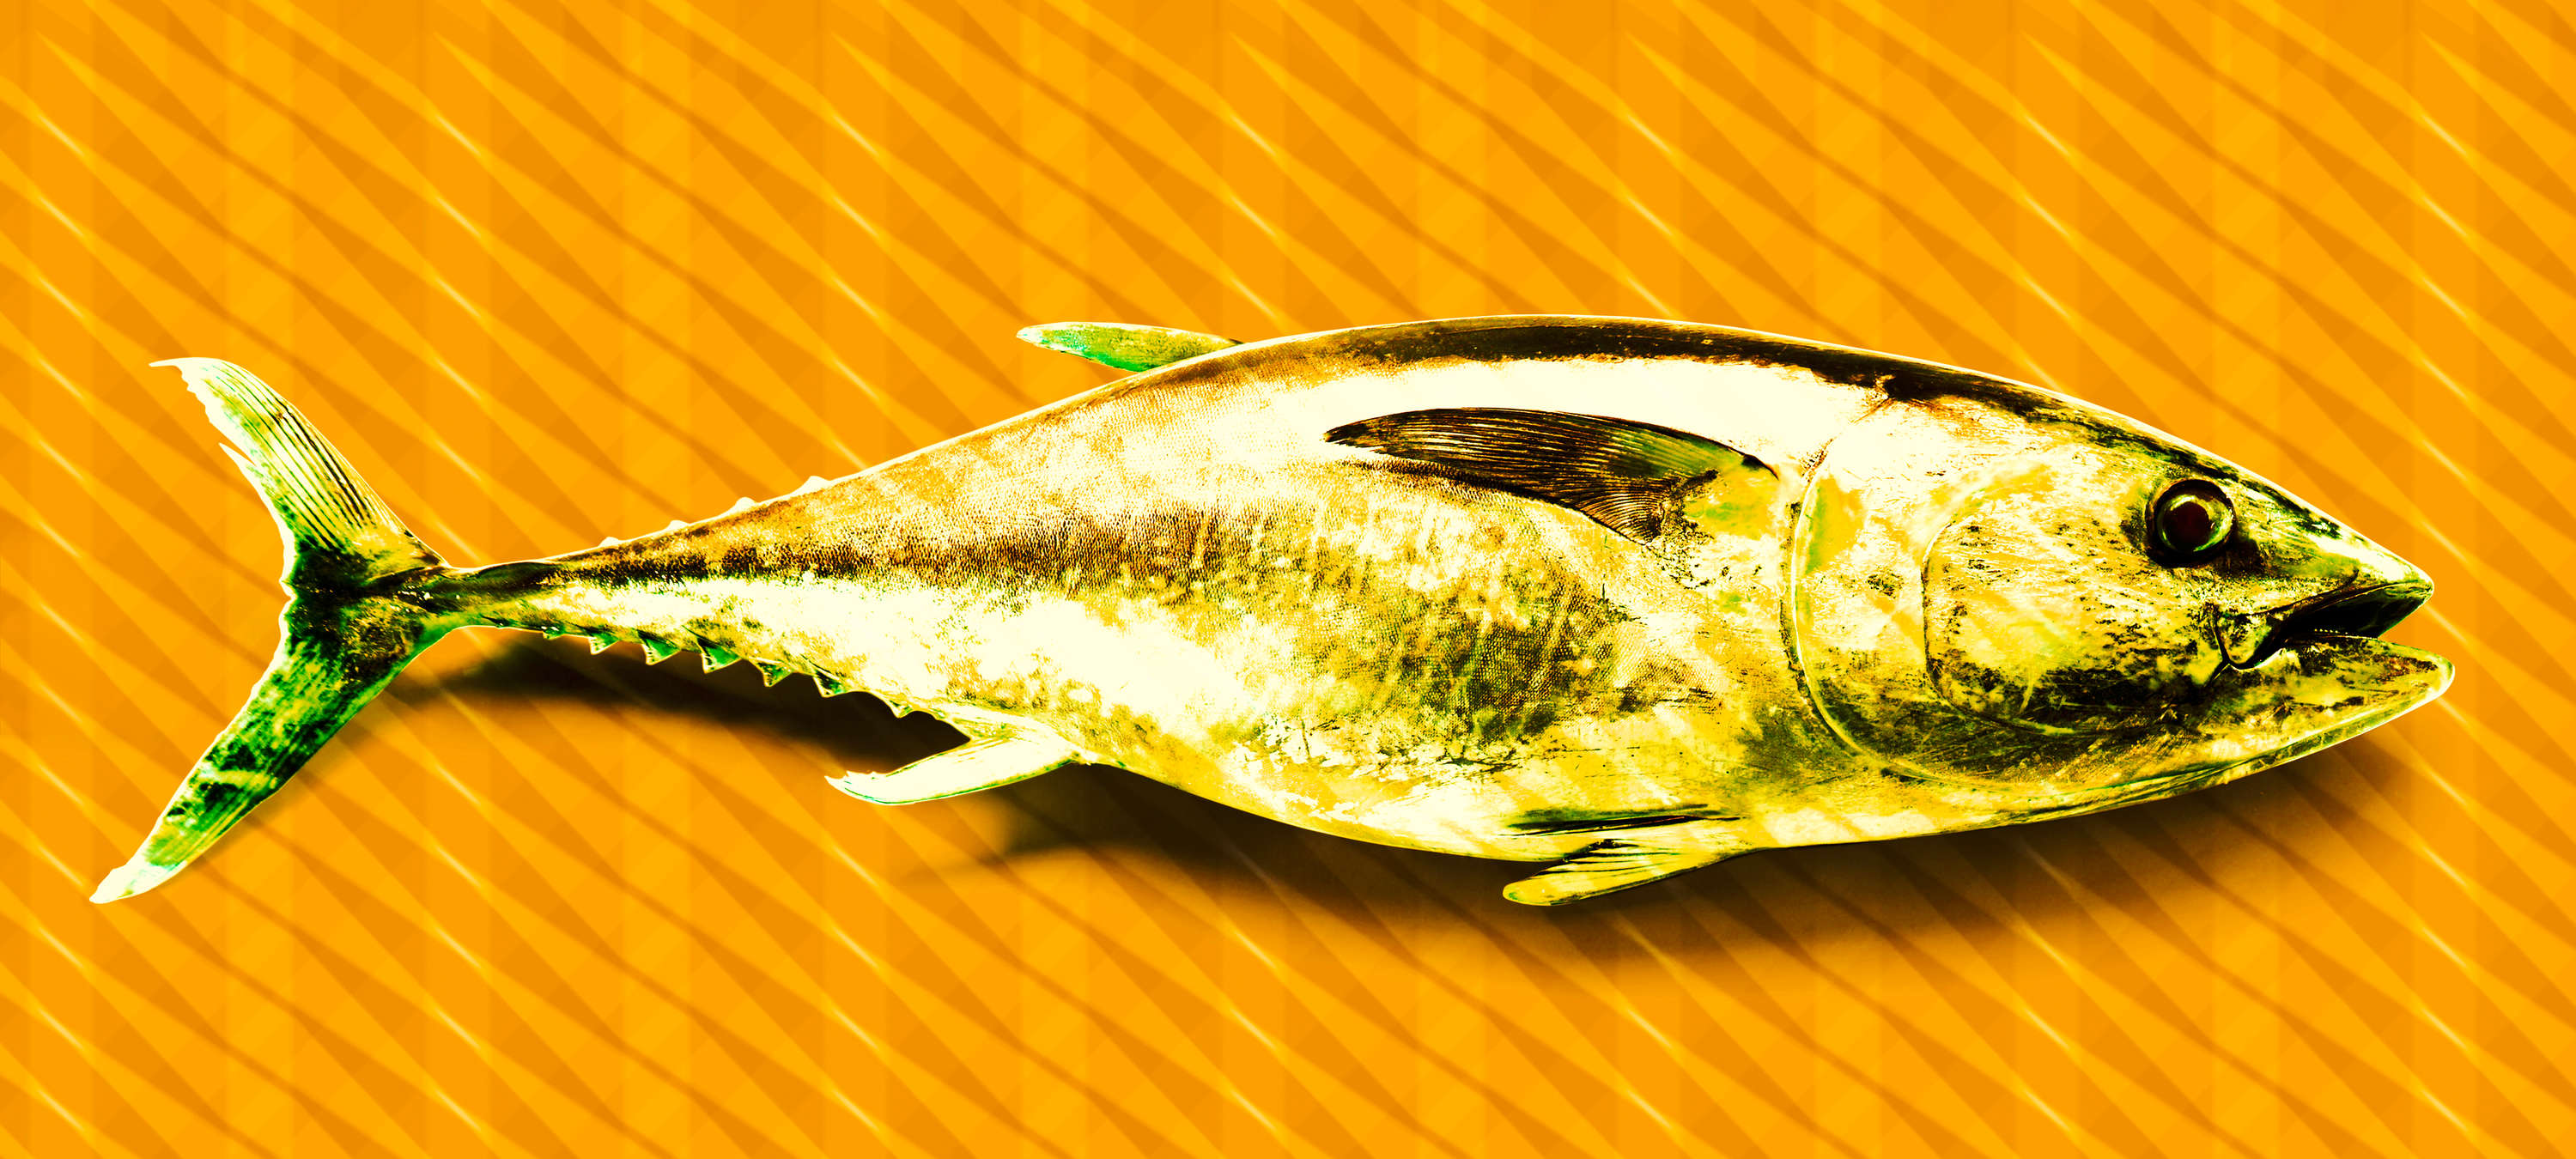             Fototapete Fisch, Pop Art Tapete mit Thunfisch – Orange, Grün, Gelb
        